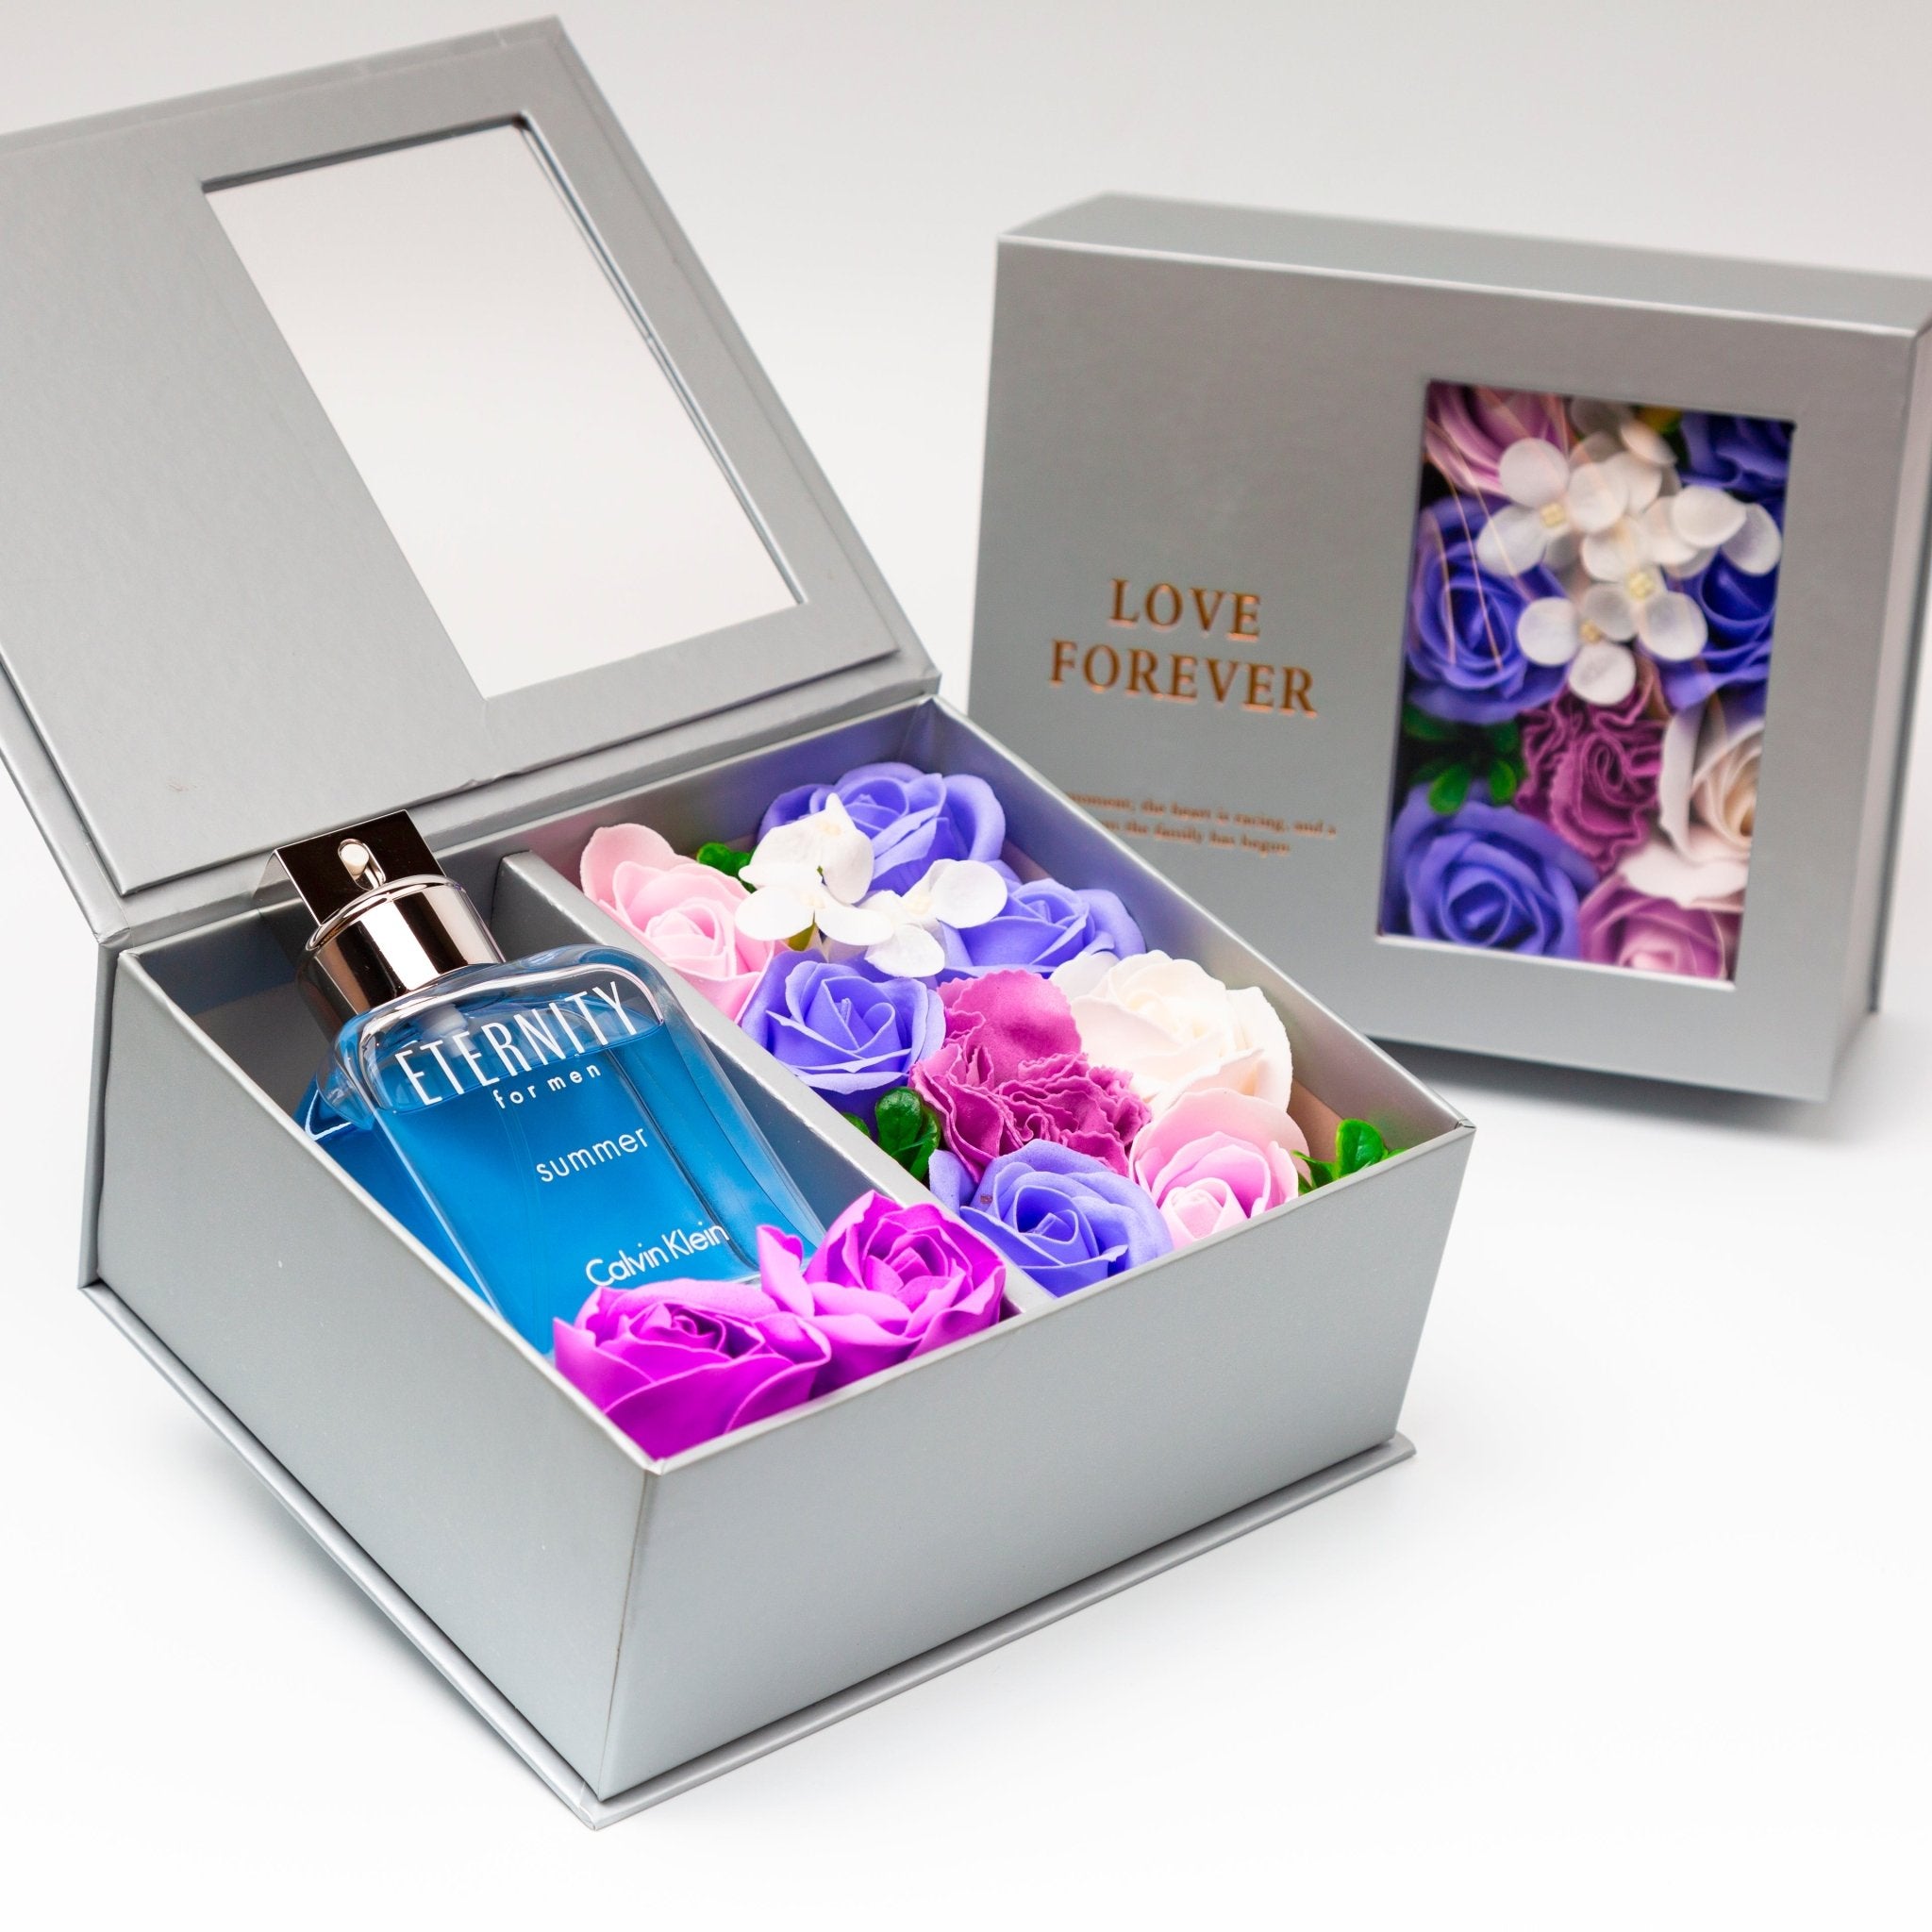 Flower Box - Perfume Gift For Men 5 - #shoFlower Box - Perfume Gift For Men 5p_name#Flower Box - Perfume Gift For Men 5Gift Boxes & TinsTakreemTakreem.joMenPerfumeFlower Box - Perfume Gift For Men 5 - Takreem.jo